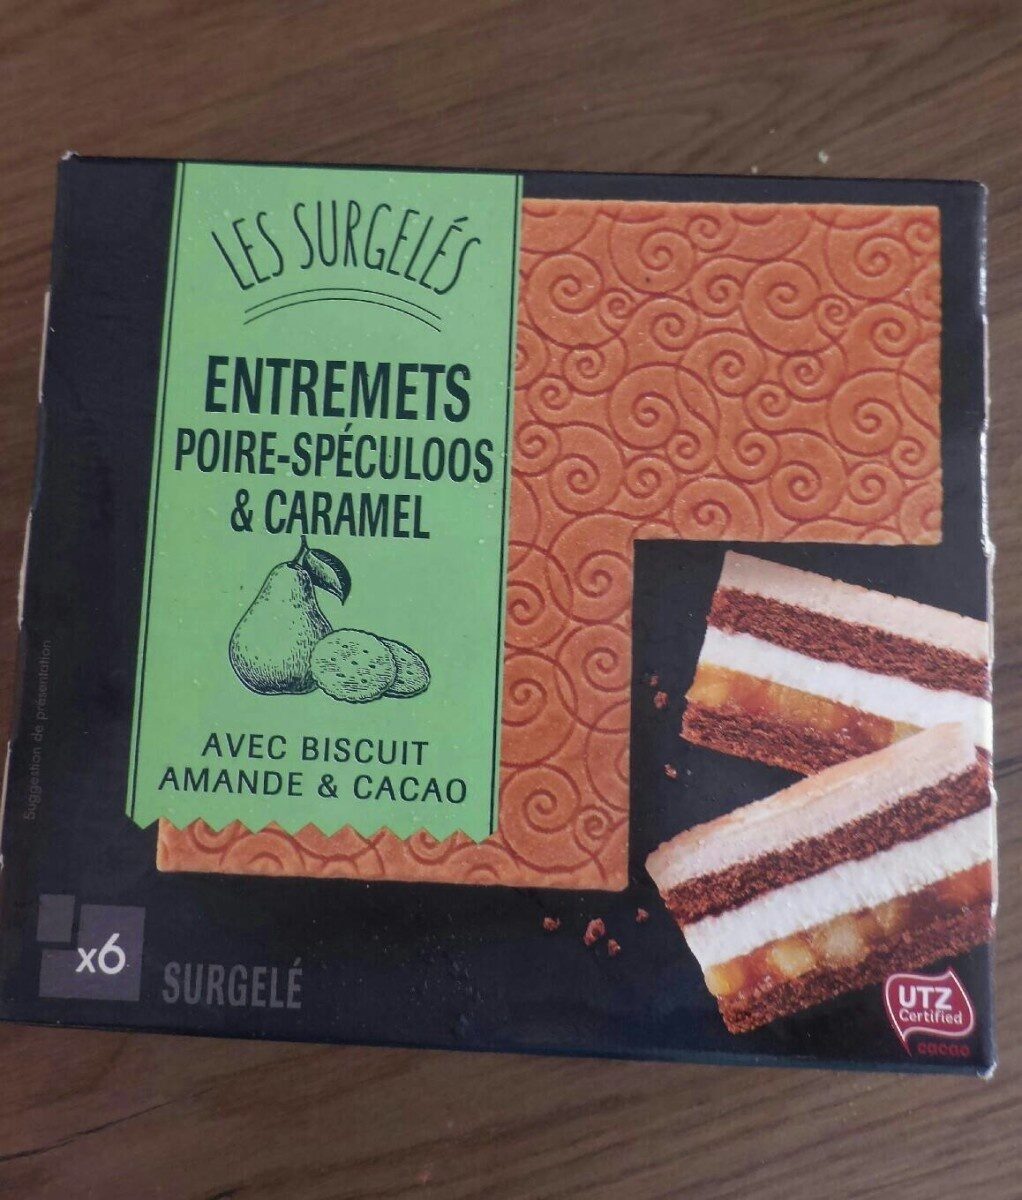 Gâteau Surgelé Poire-Speculoos - Prodotto - fr